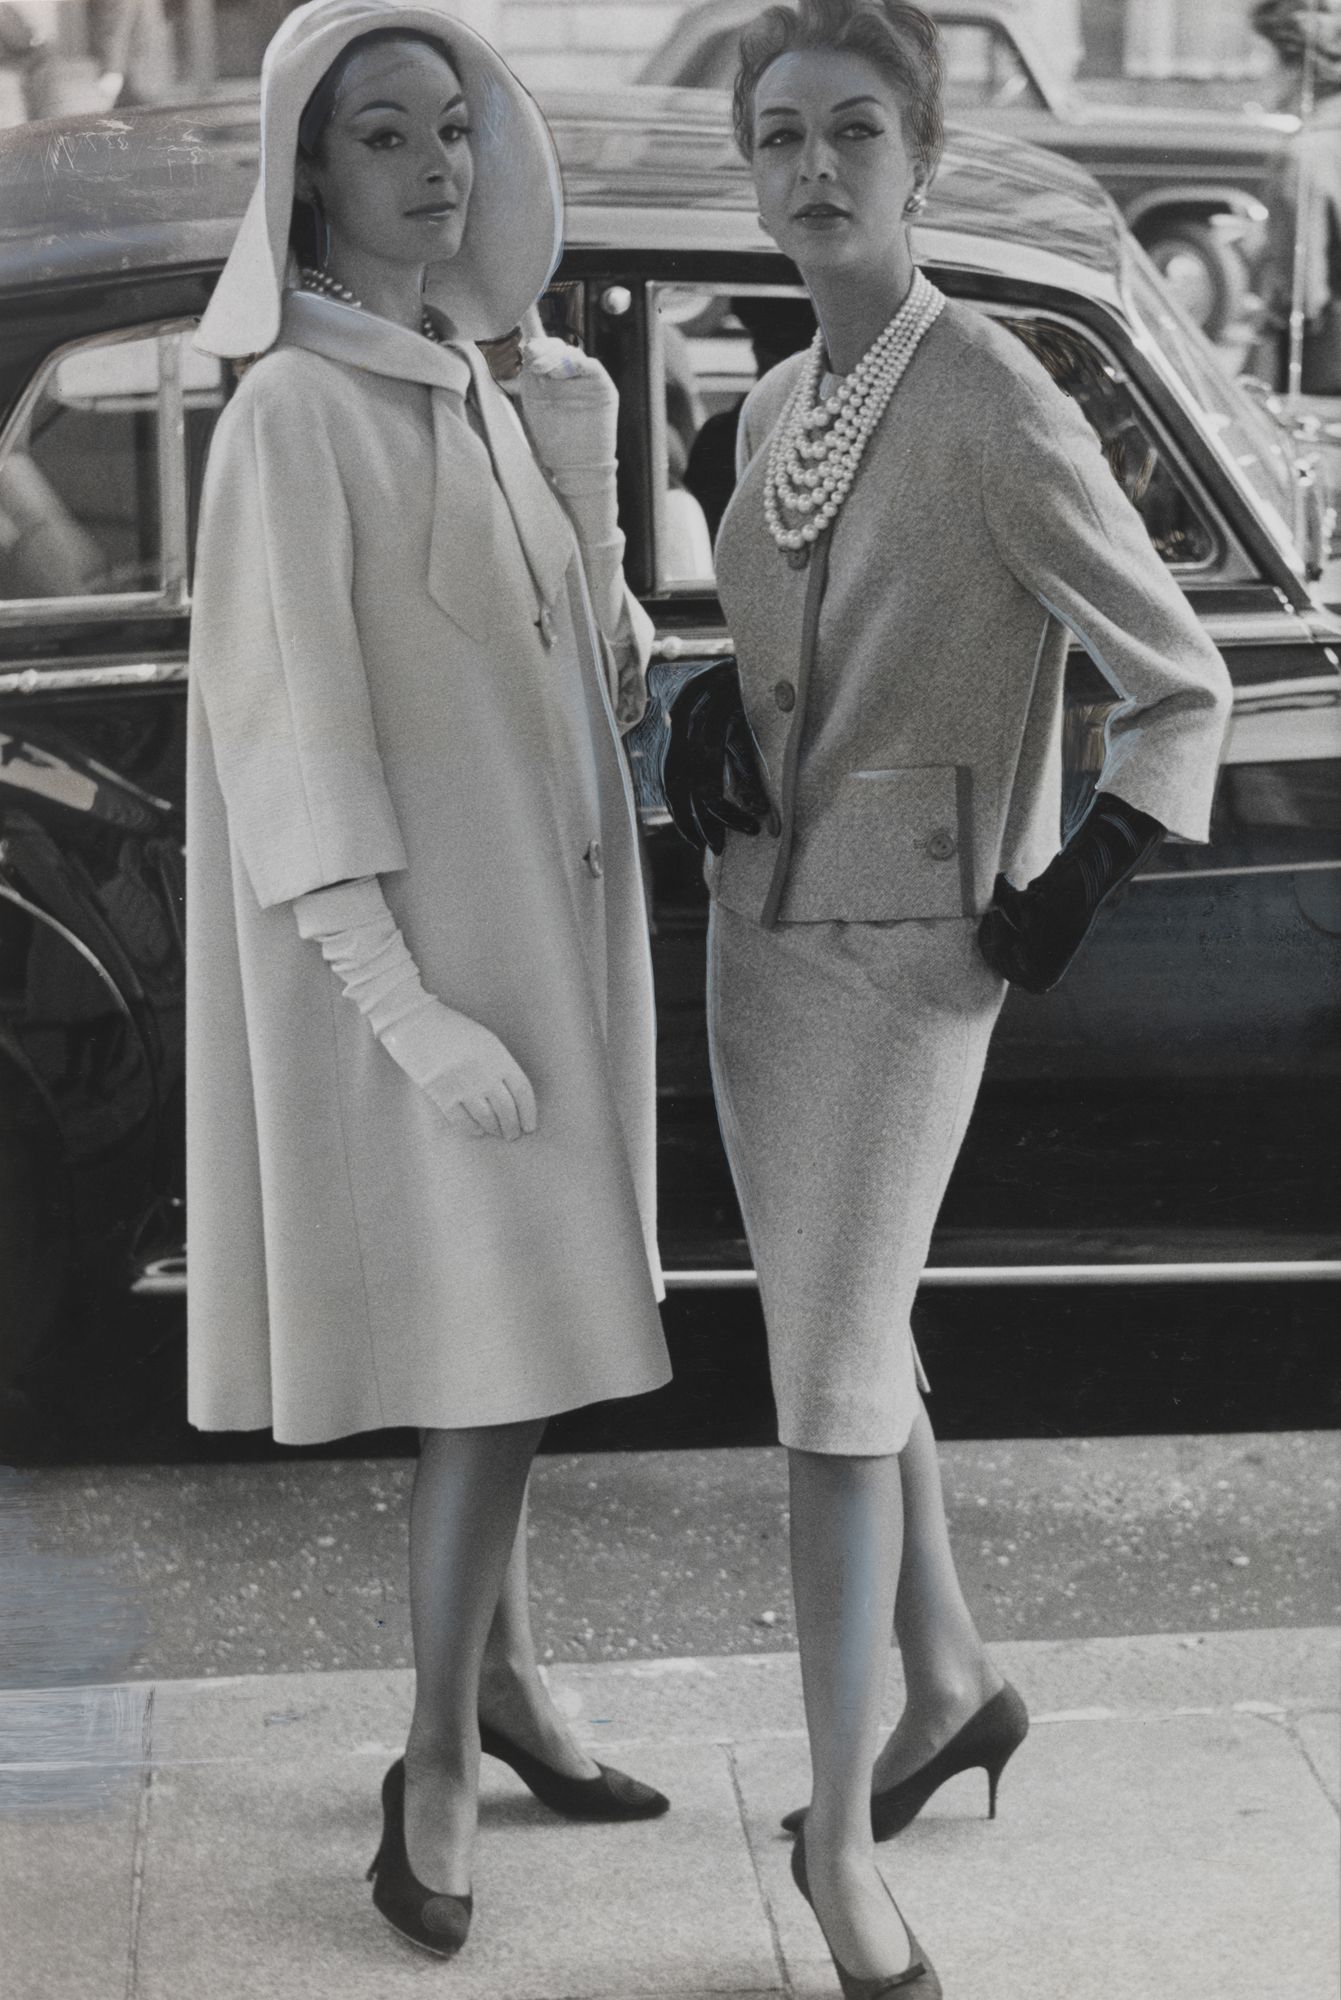 60年代ファッション 今なお愛されるアイコニックな60年代ファッショントレンド60選